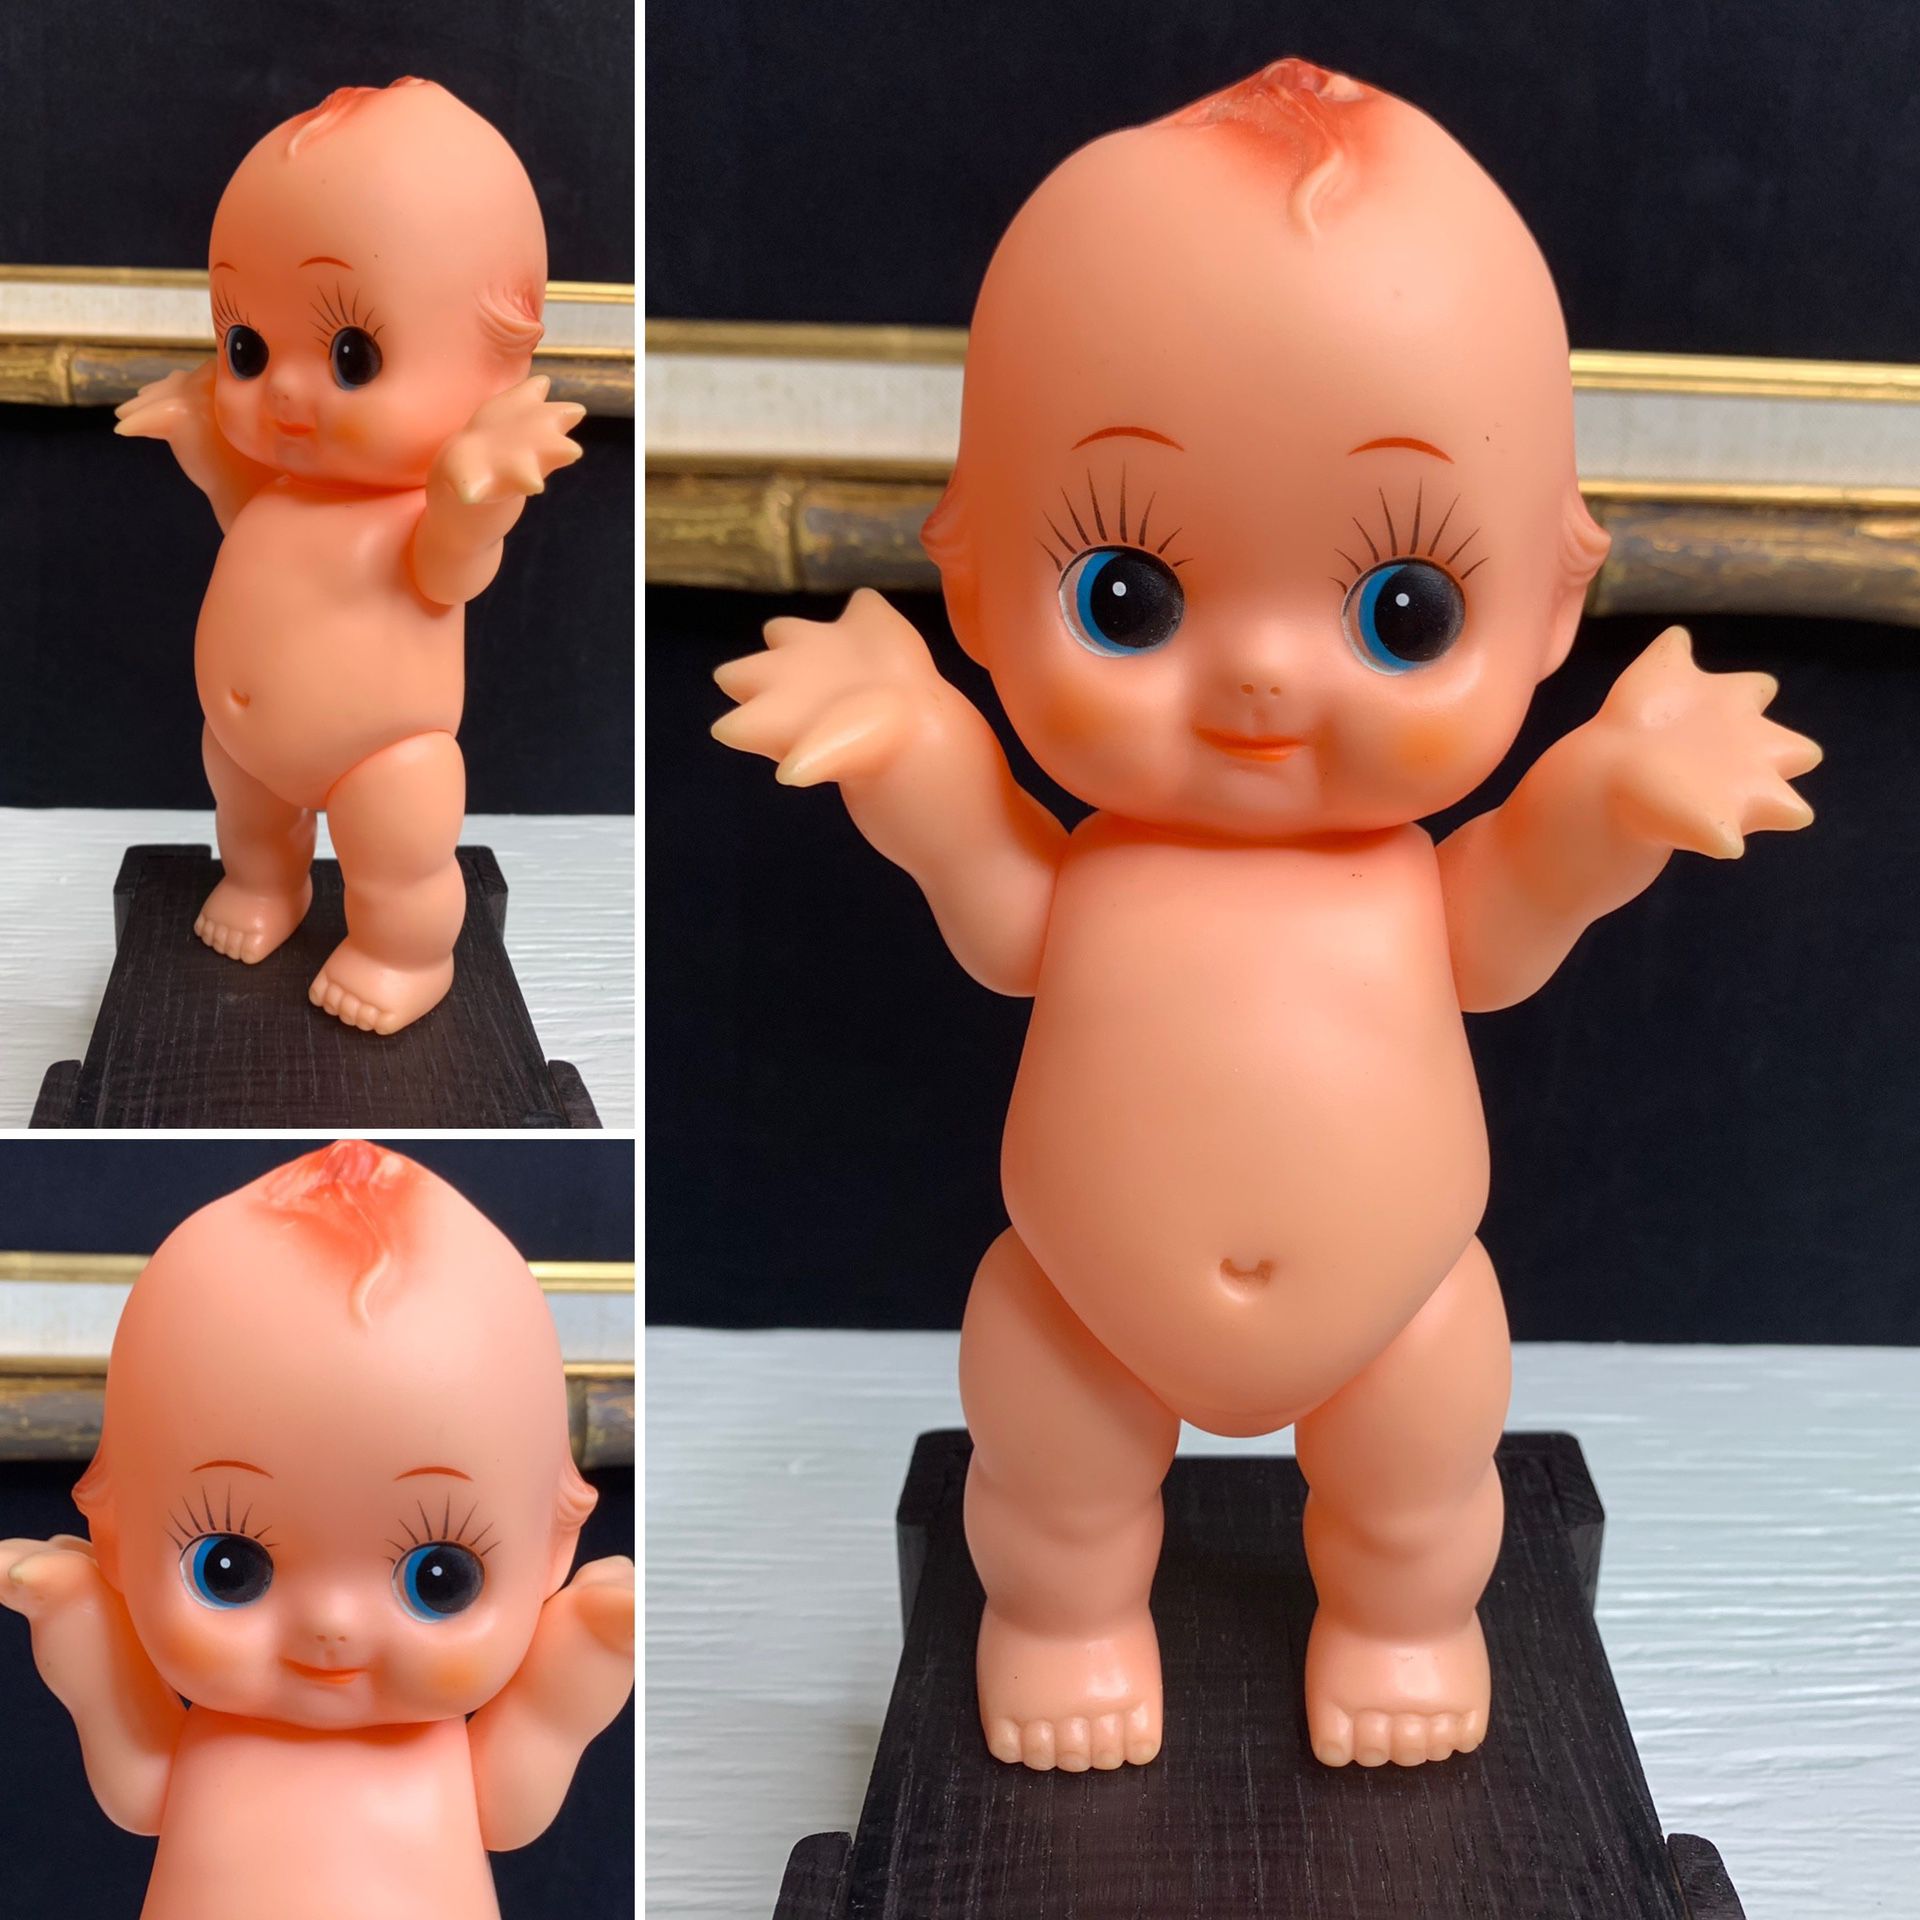 Vintage Kewpie Doll Circa 1960s - Made In Japan - 8” Tall - PLUS 3”inch Kewpie Doll !